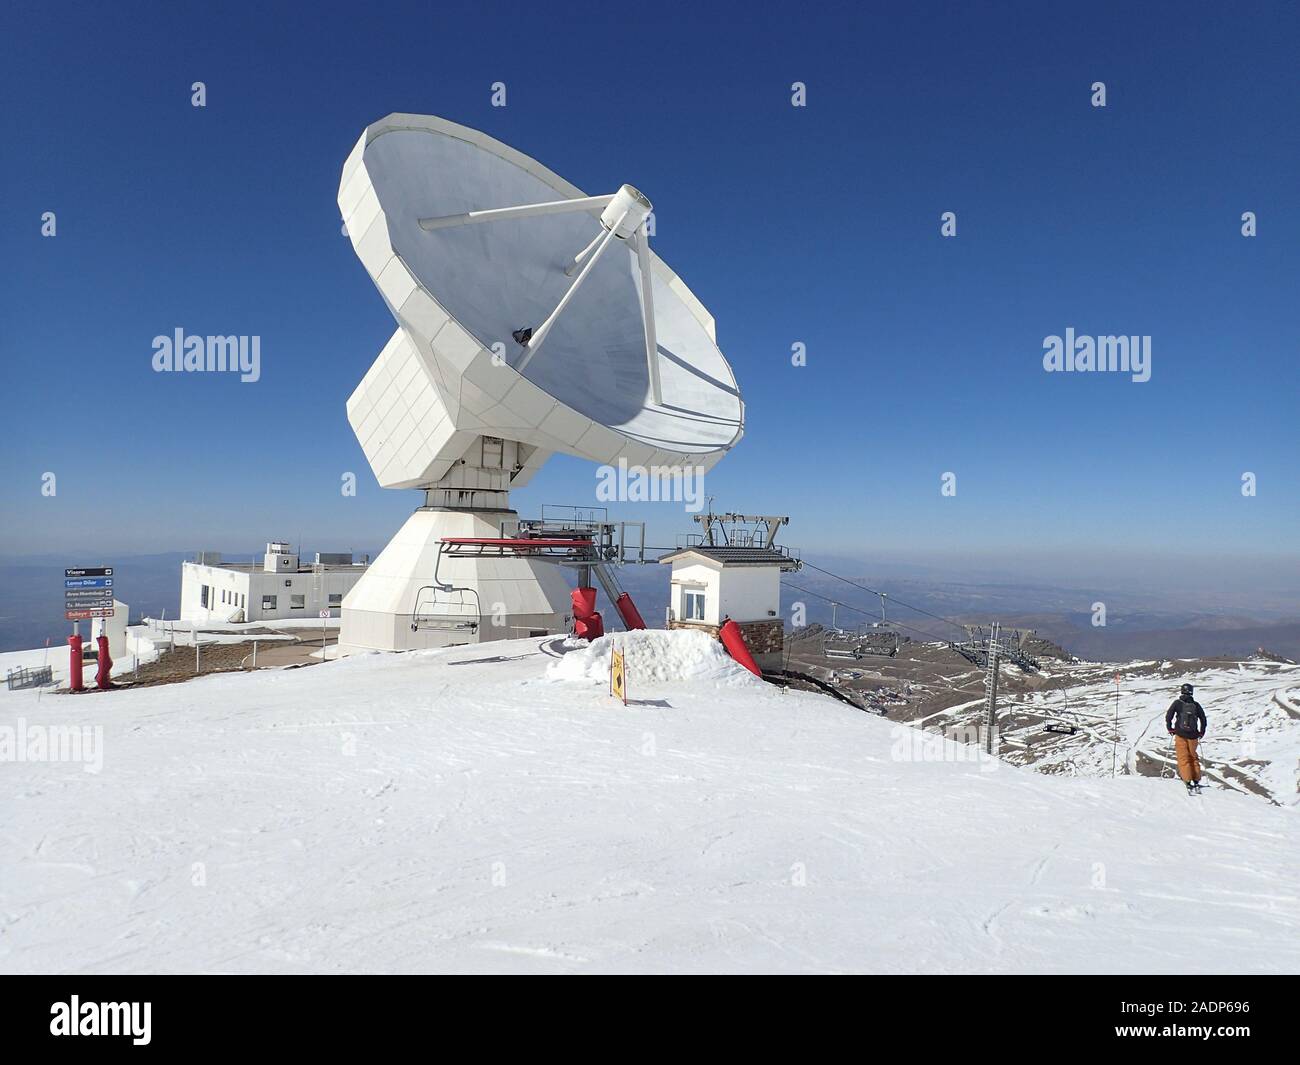 Le télescope astronomique géant de l'observatoire de l'IRAM dans la station de ski de la Sierra Nevada, Grenade, Andalousie, Espagne Banque D'Images